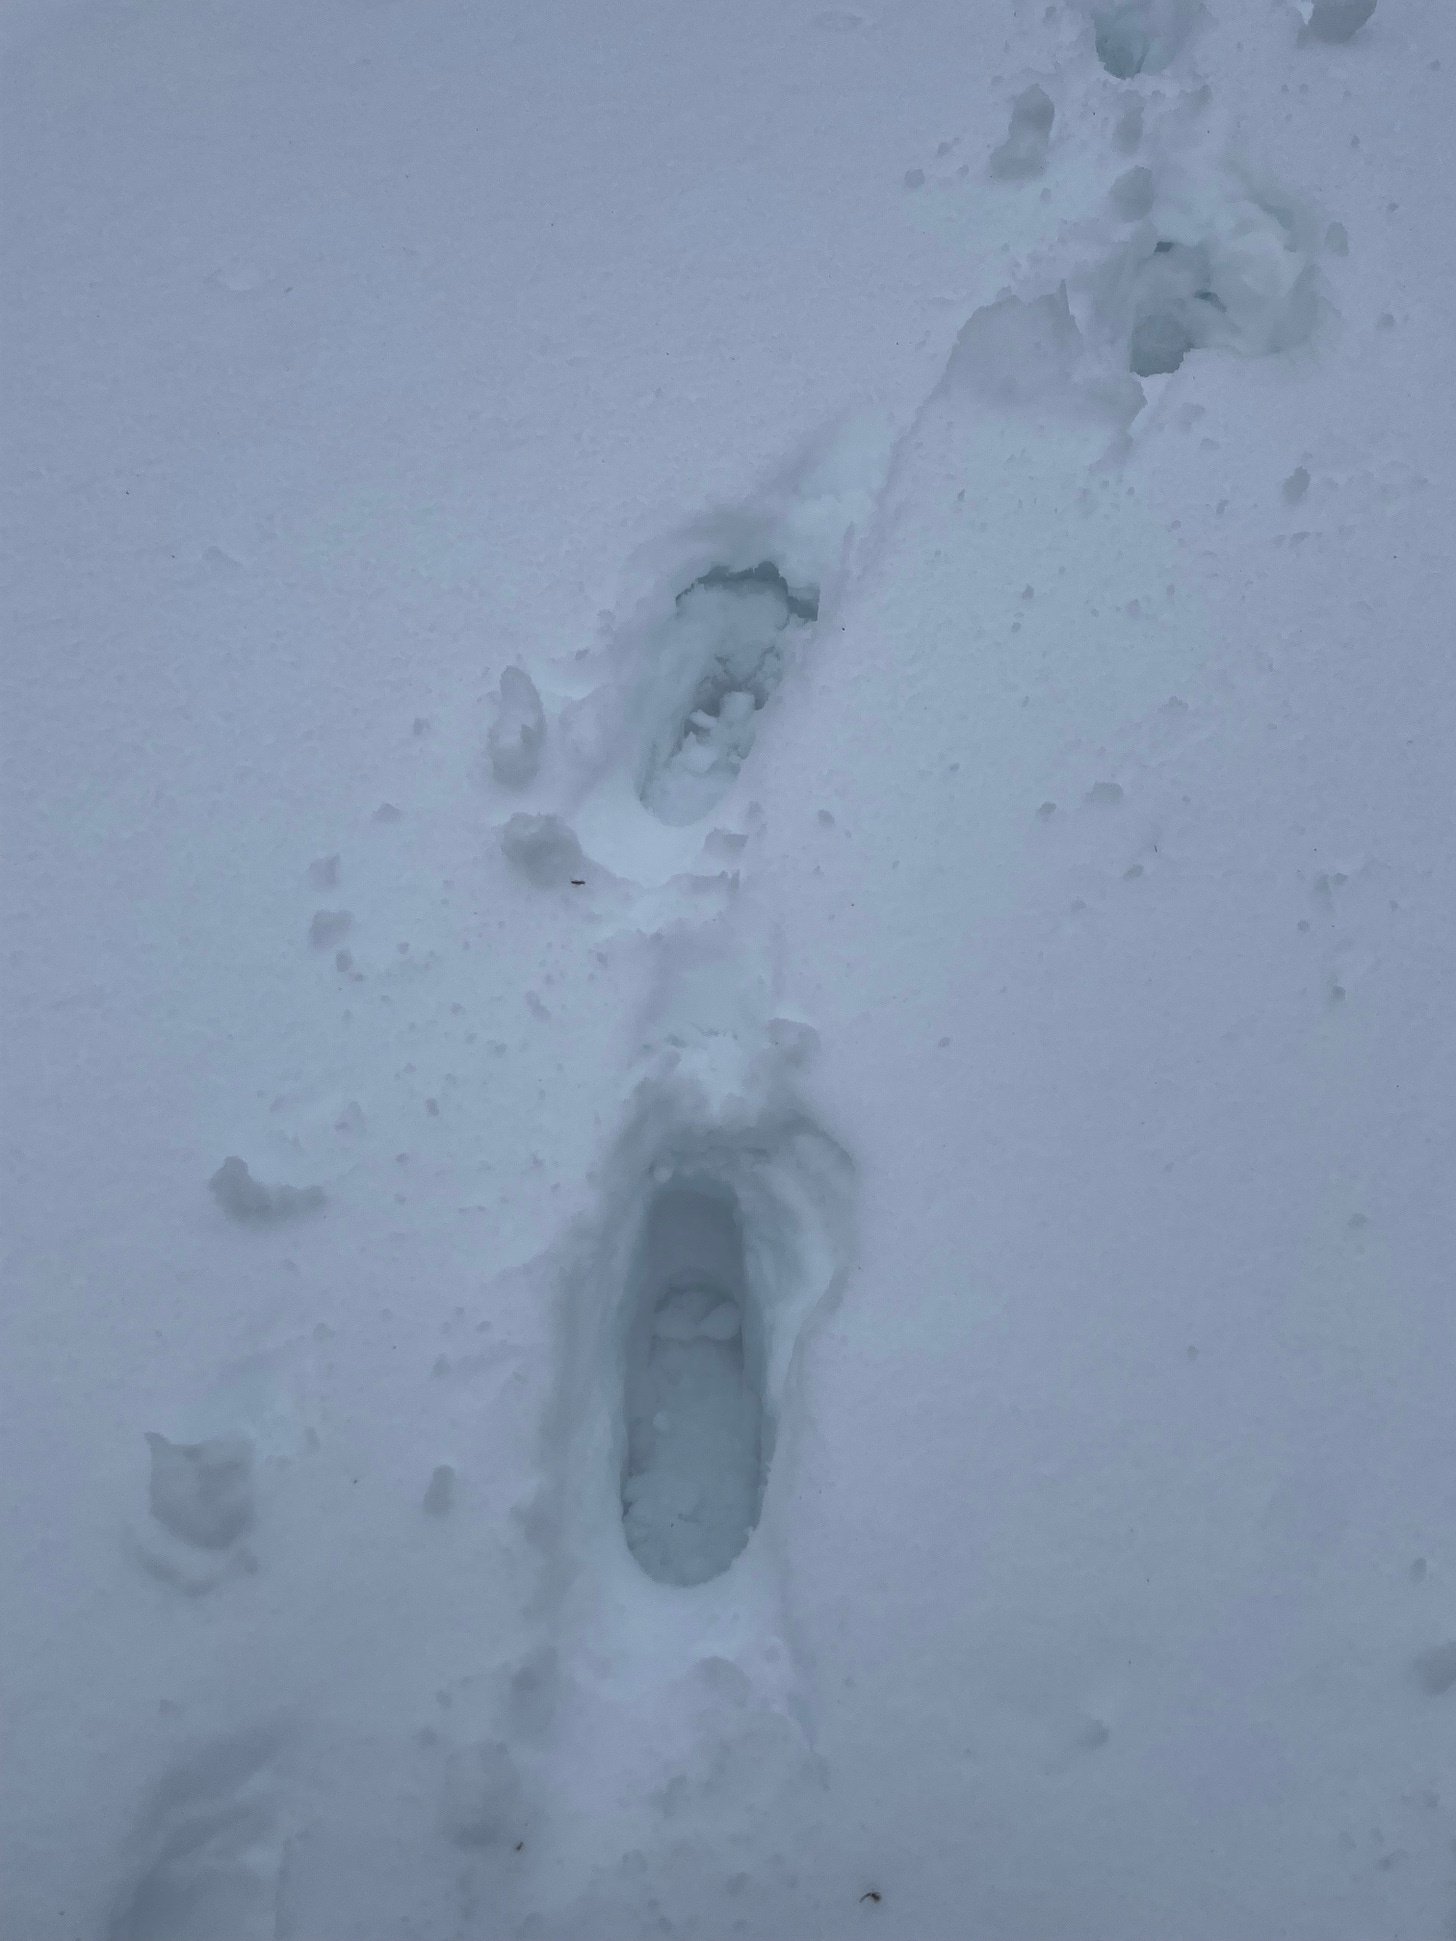 Footsteps in deep snow